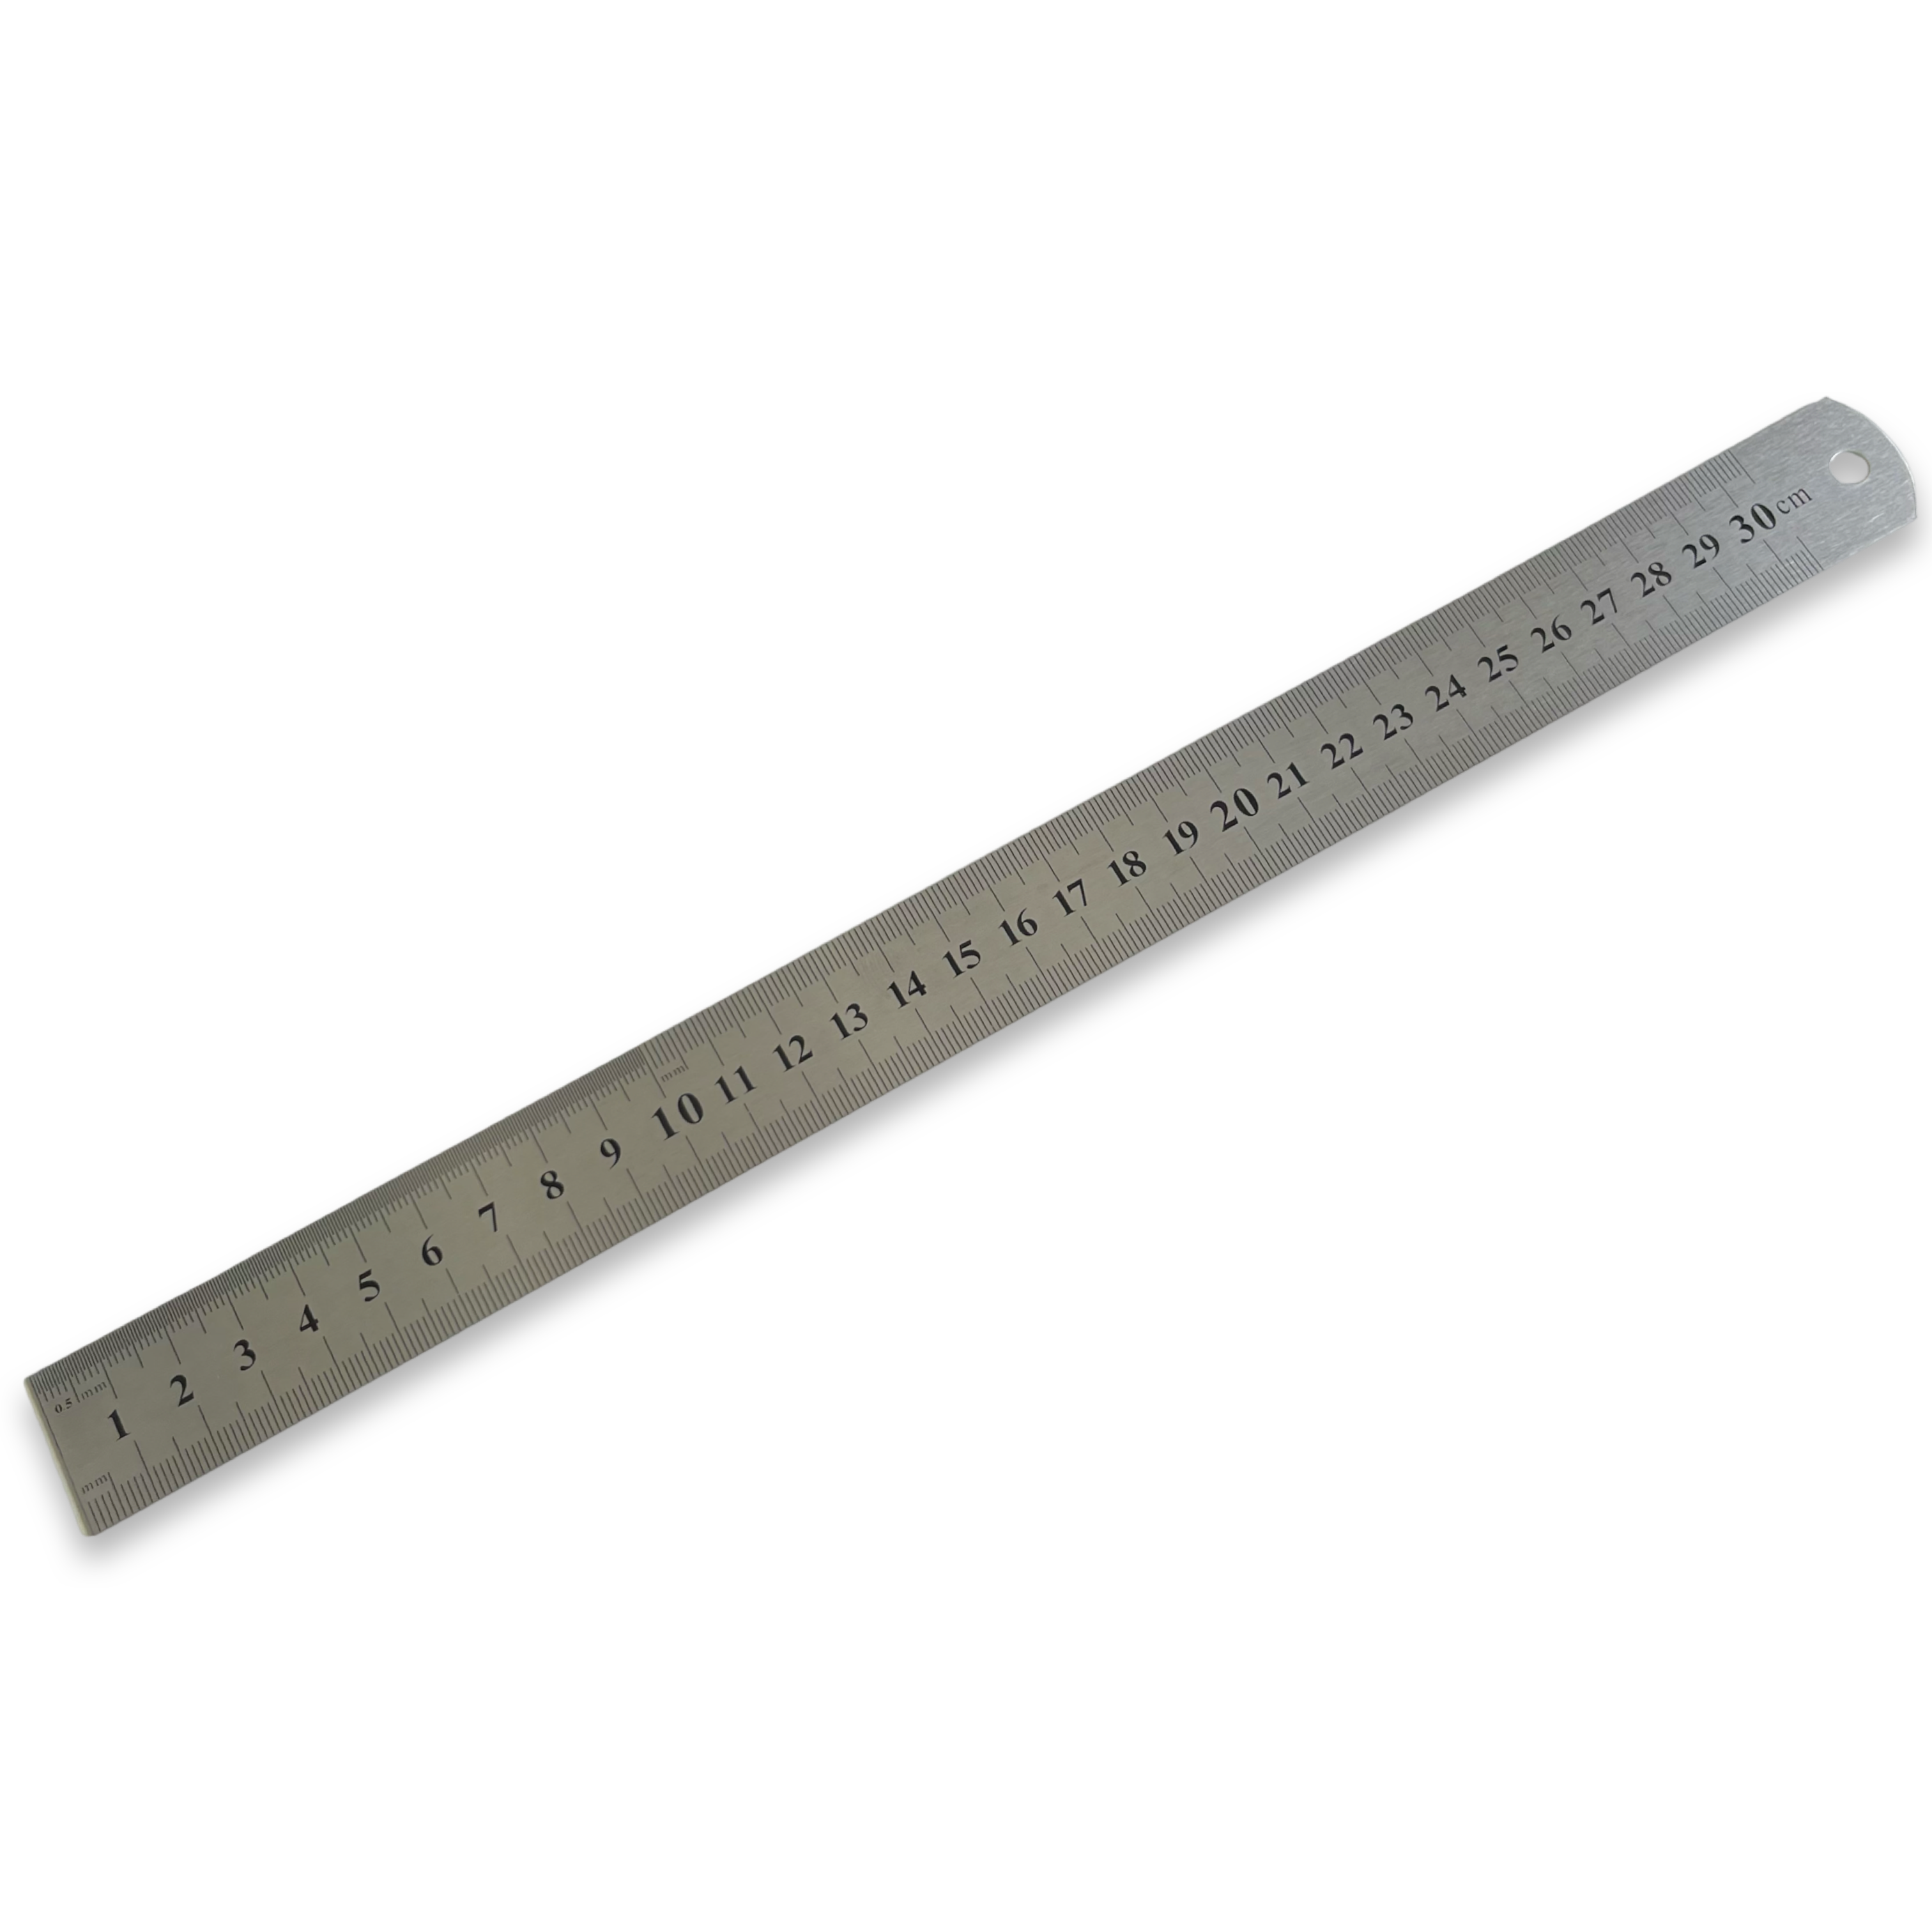 300mm / 12" Stainless Steel Ruler